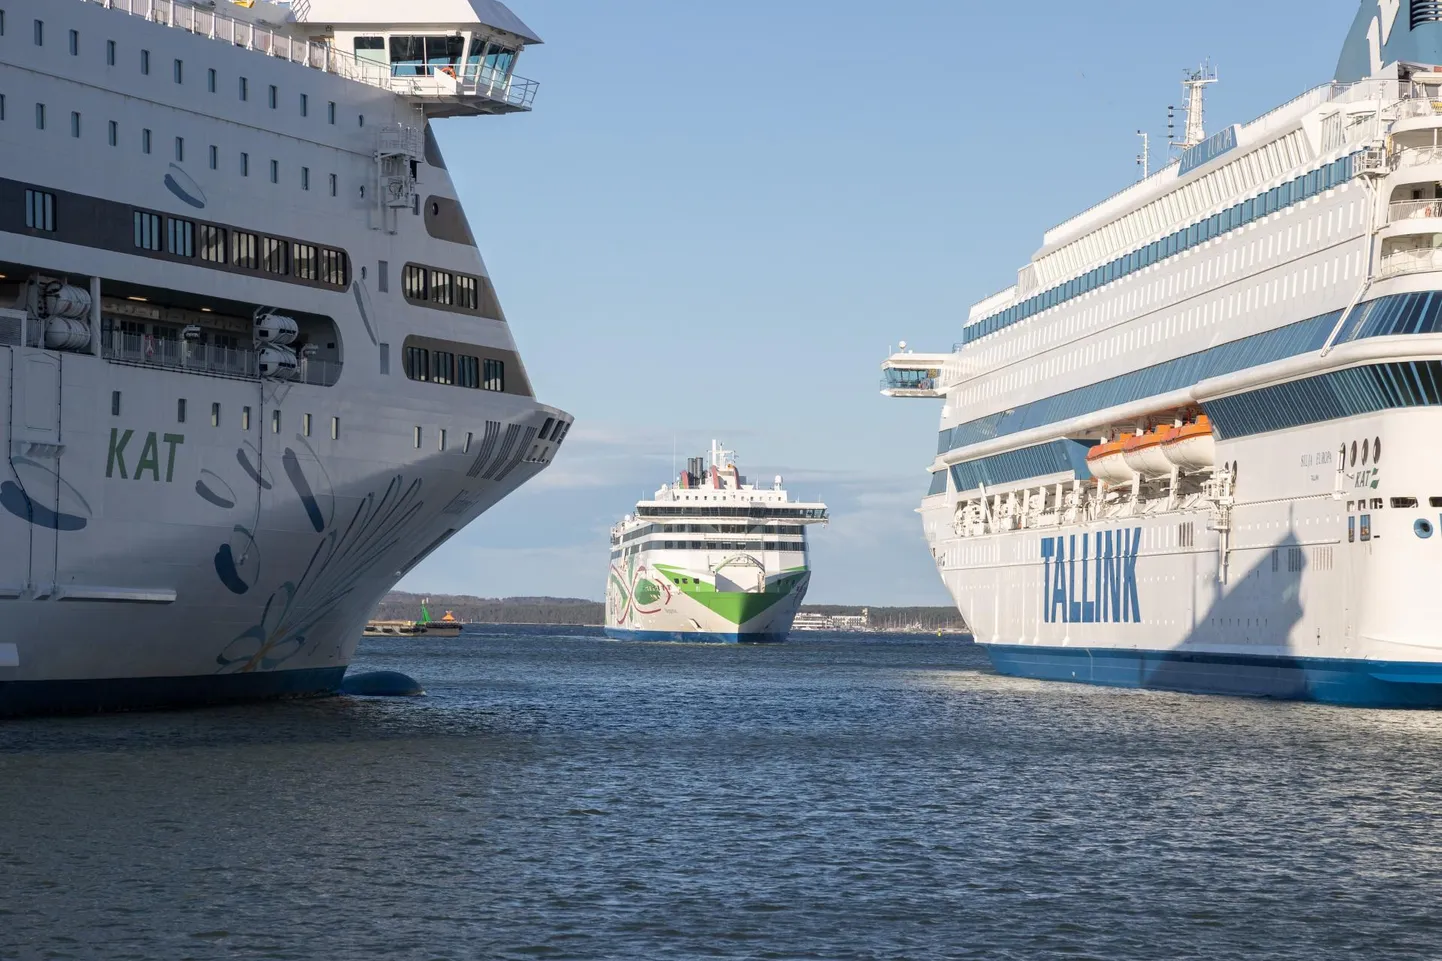 Soome karmimad reisipiirangud Eestile tähendaksid, et harjumuspärased ülelahereisid enam ei ole teretulnud ning inimene peab jääma lahe põhjakaldal kaheks nädalaks karantiini.